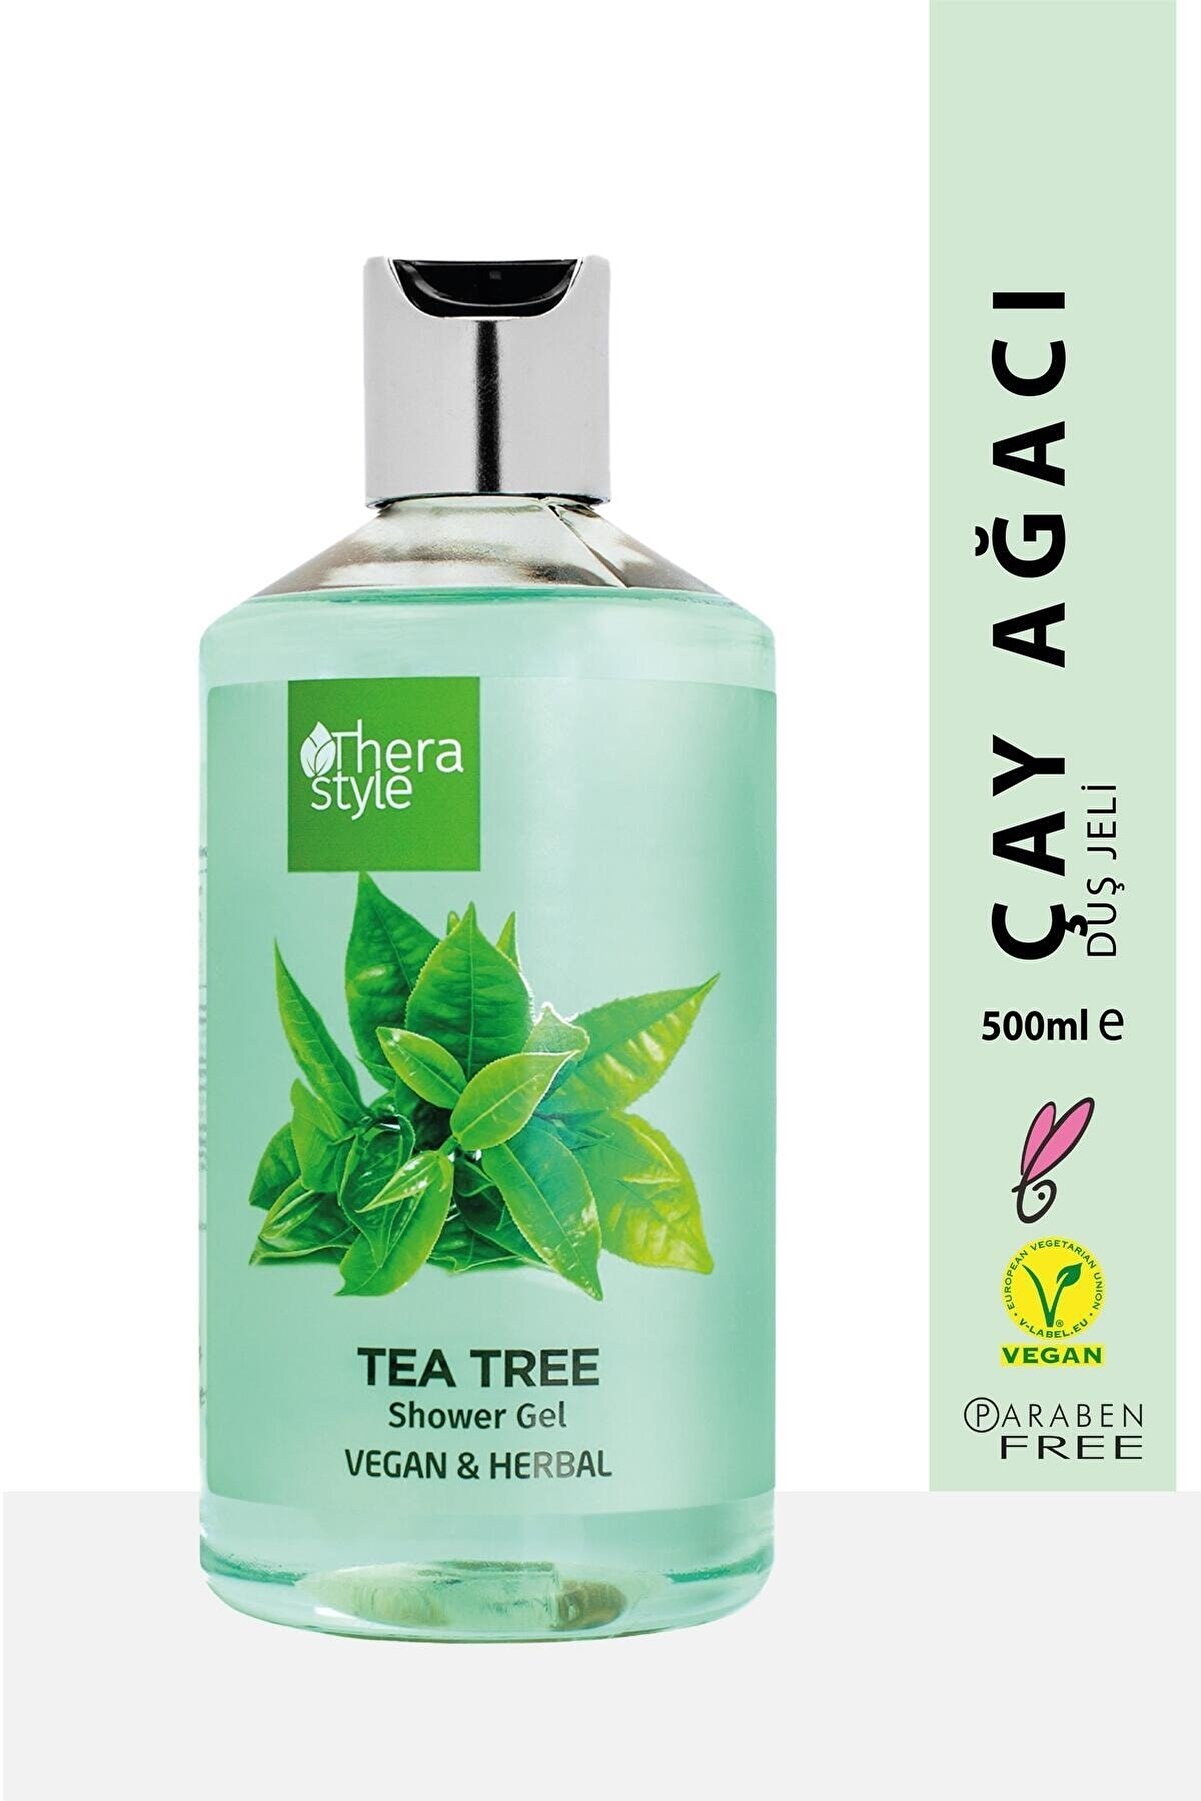 Thera Style Çay Ağacı Arındırıcı Vegan Duş Jeli Shower Gel 500ml